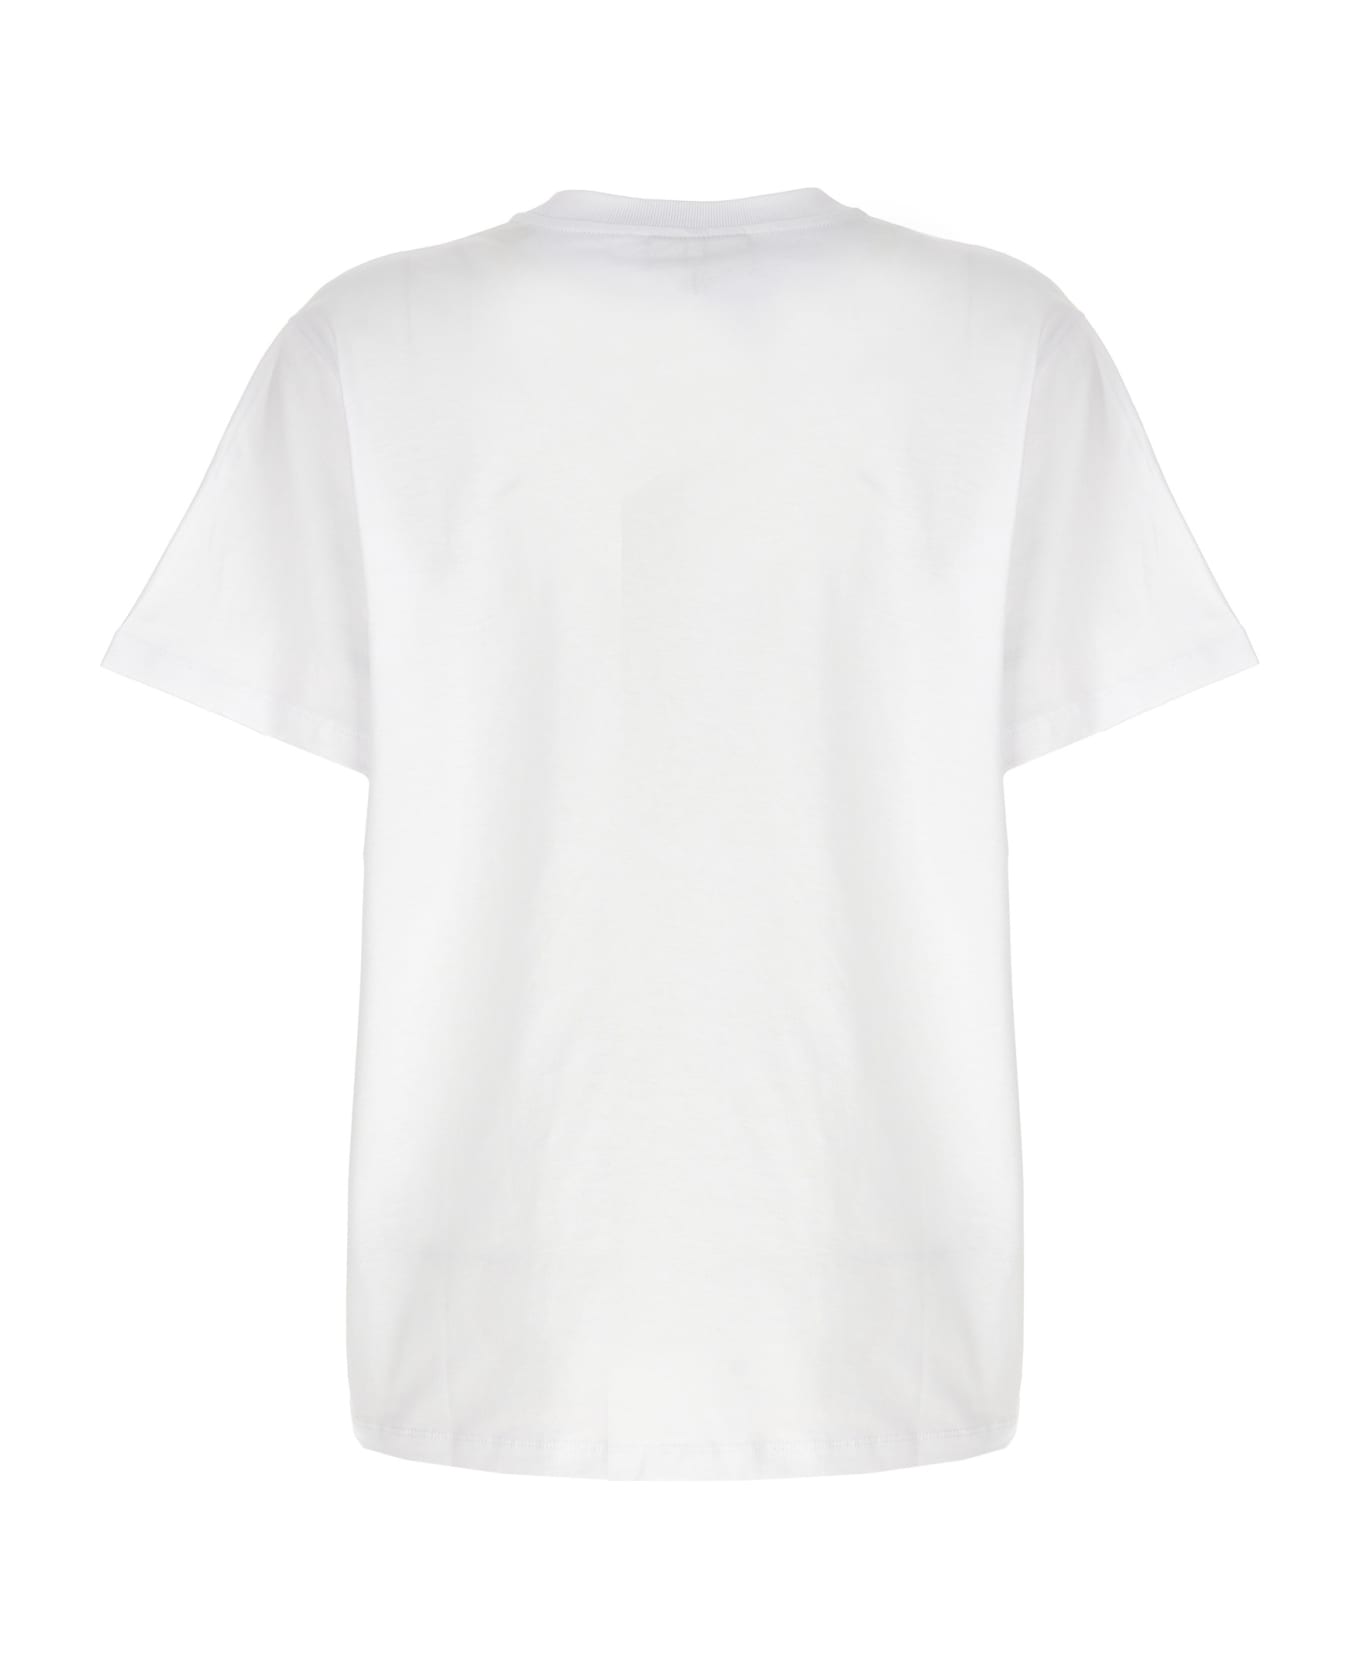 Ganni 'banana' T-shirt - Bright White